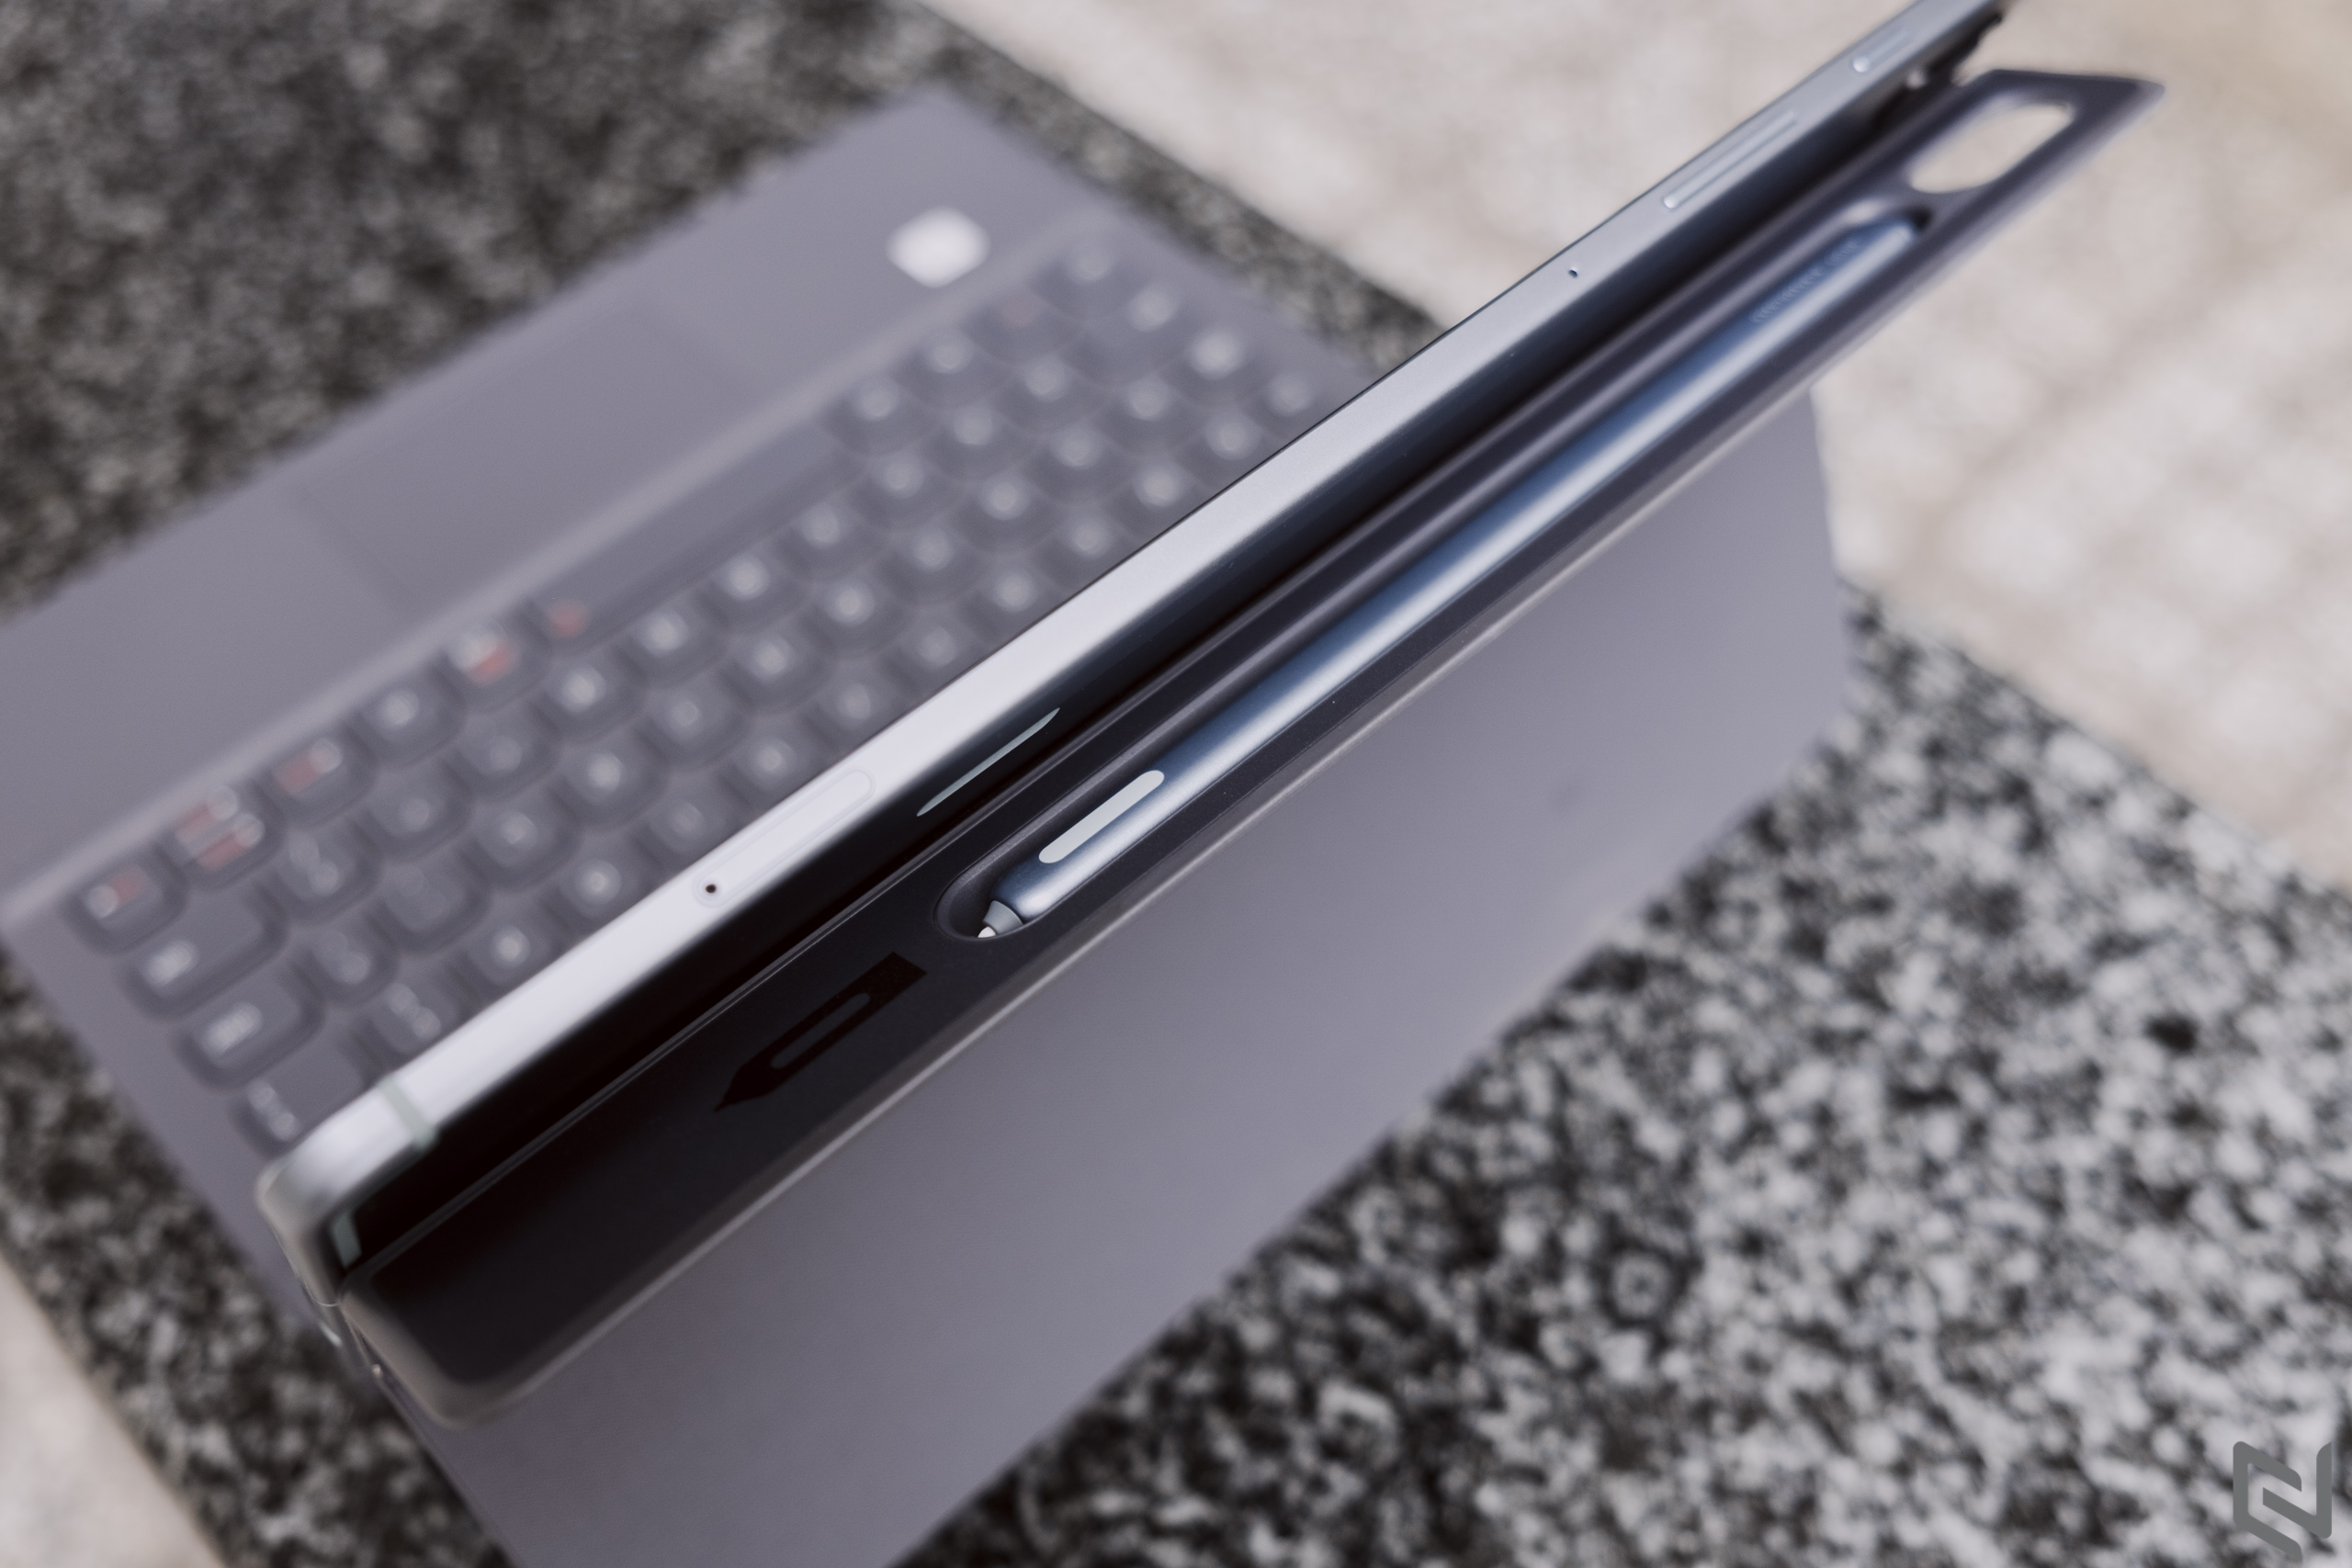 Đánh giá Samsung Galaxy Tab S6: Thiết kế đẹp mắt với bút S-Pen tiện dụng, cấu hình rất mạnh, tạm thay thế laptop